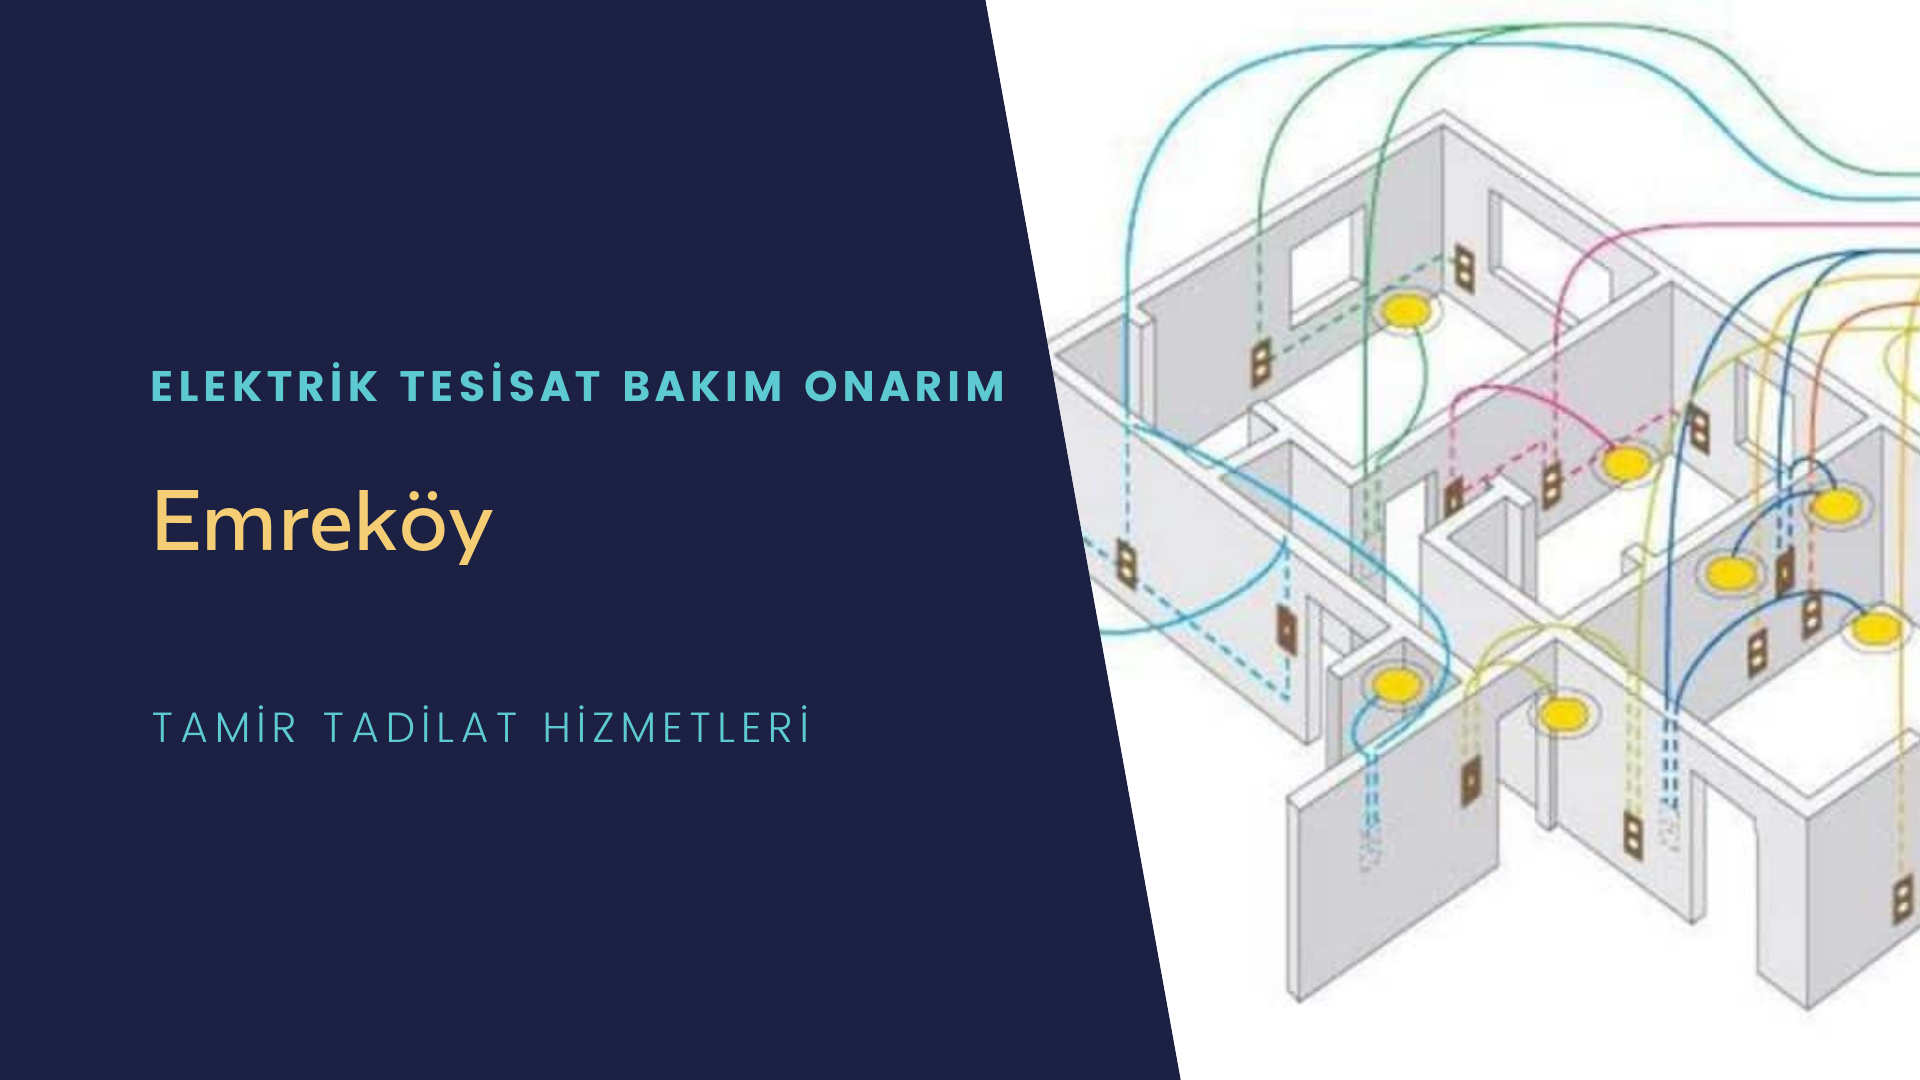 Emreköy'de elektrik tesisatı ustalarımı arıyorsunuz doğru adrestenizi Emreköy elektrik tesisatı ustalarımız 7/24 sizlere hizmet vermekten mutluluk duyar.